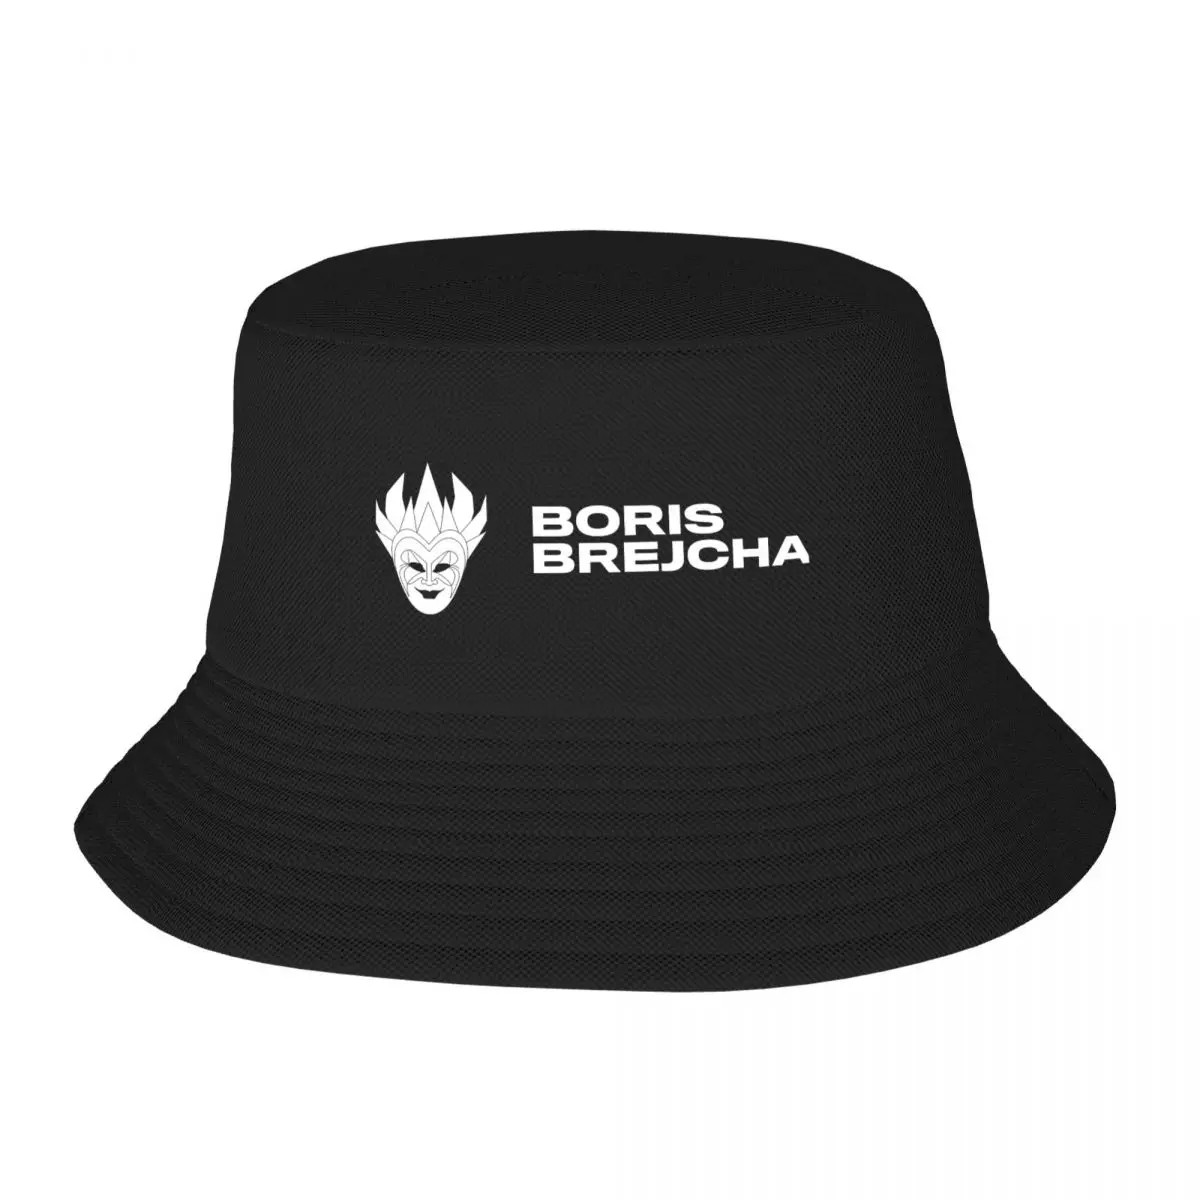 Забавная шляпа рыбака для взрослых DJ BORIS BREJCHA, Регулируемая Шляпа, Модная Повседневная Кепка, Шляпа водителя грузовика